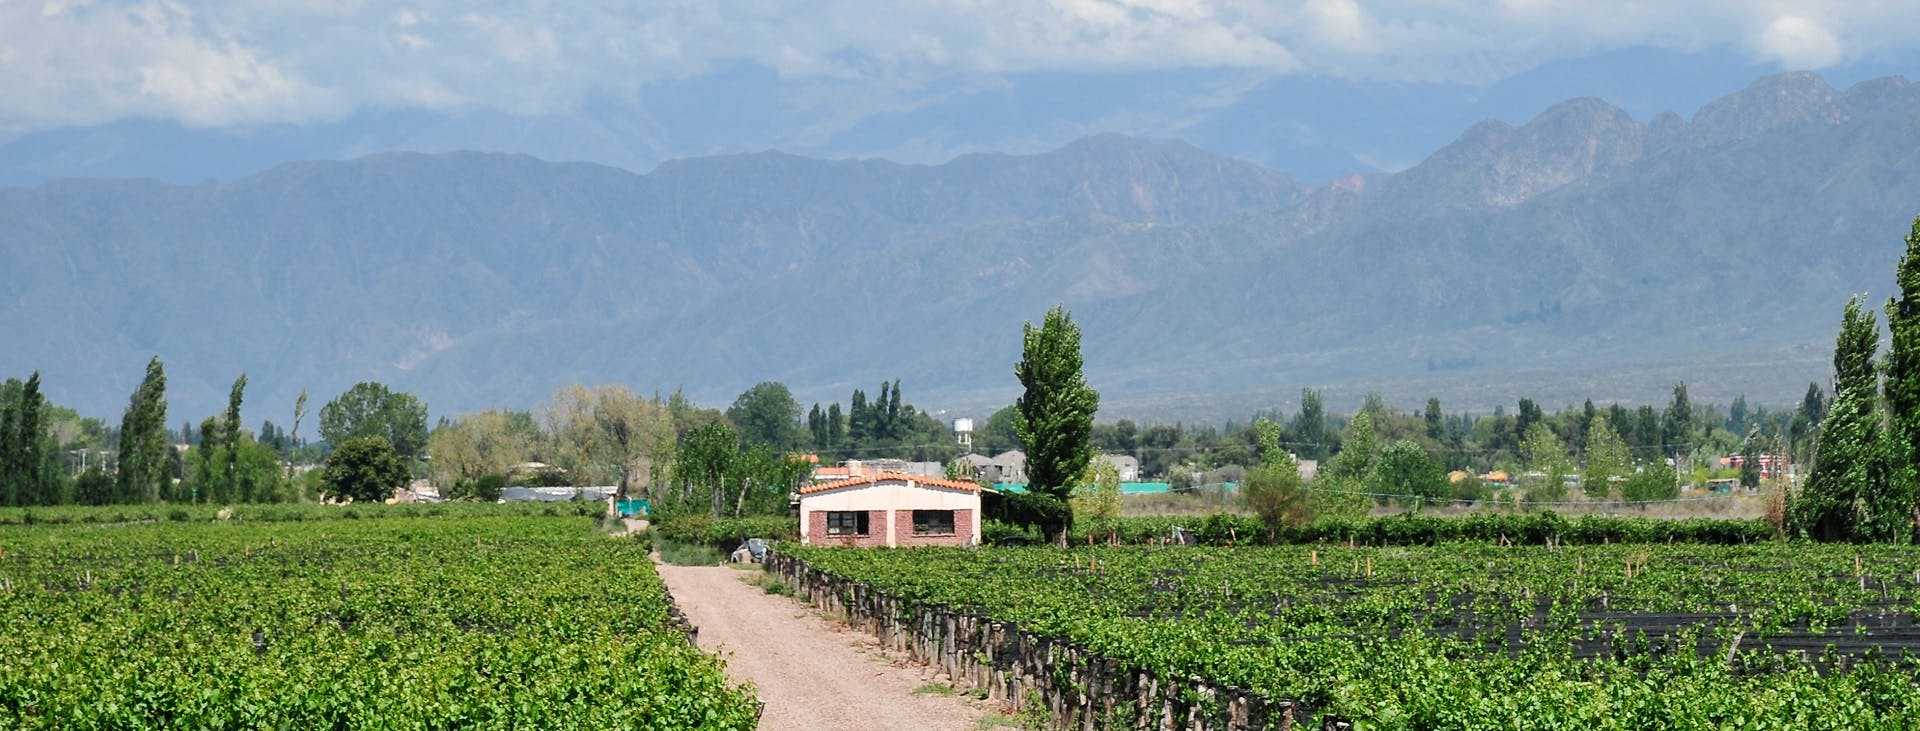 Mendoza halbtägige Weintour mit Verkostung